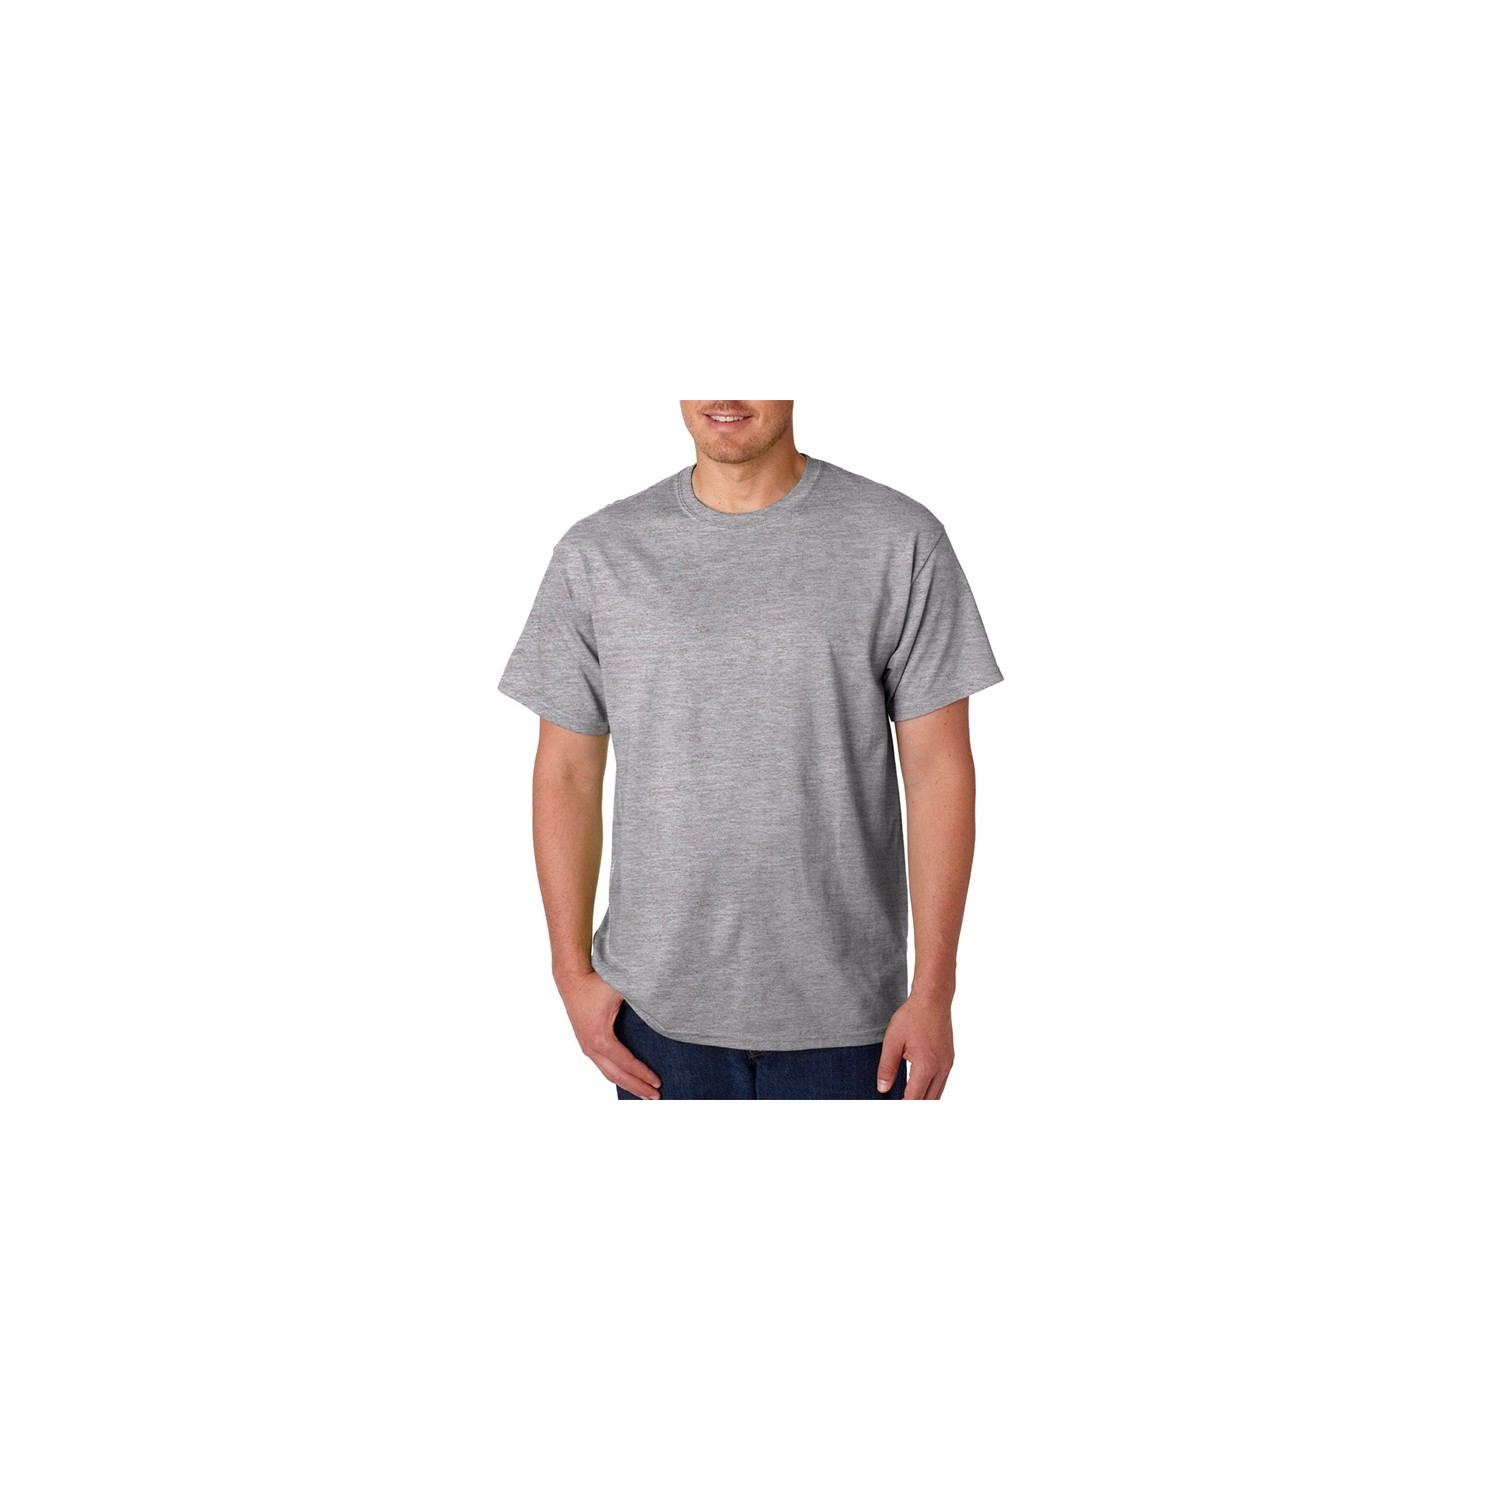 T-shirt Homem MC 150 Keya